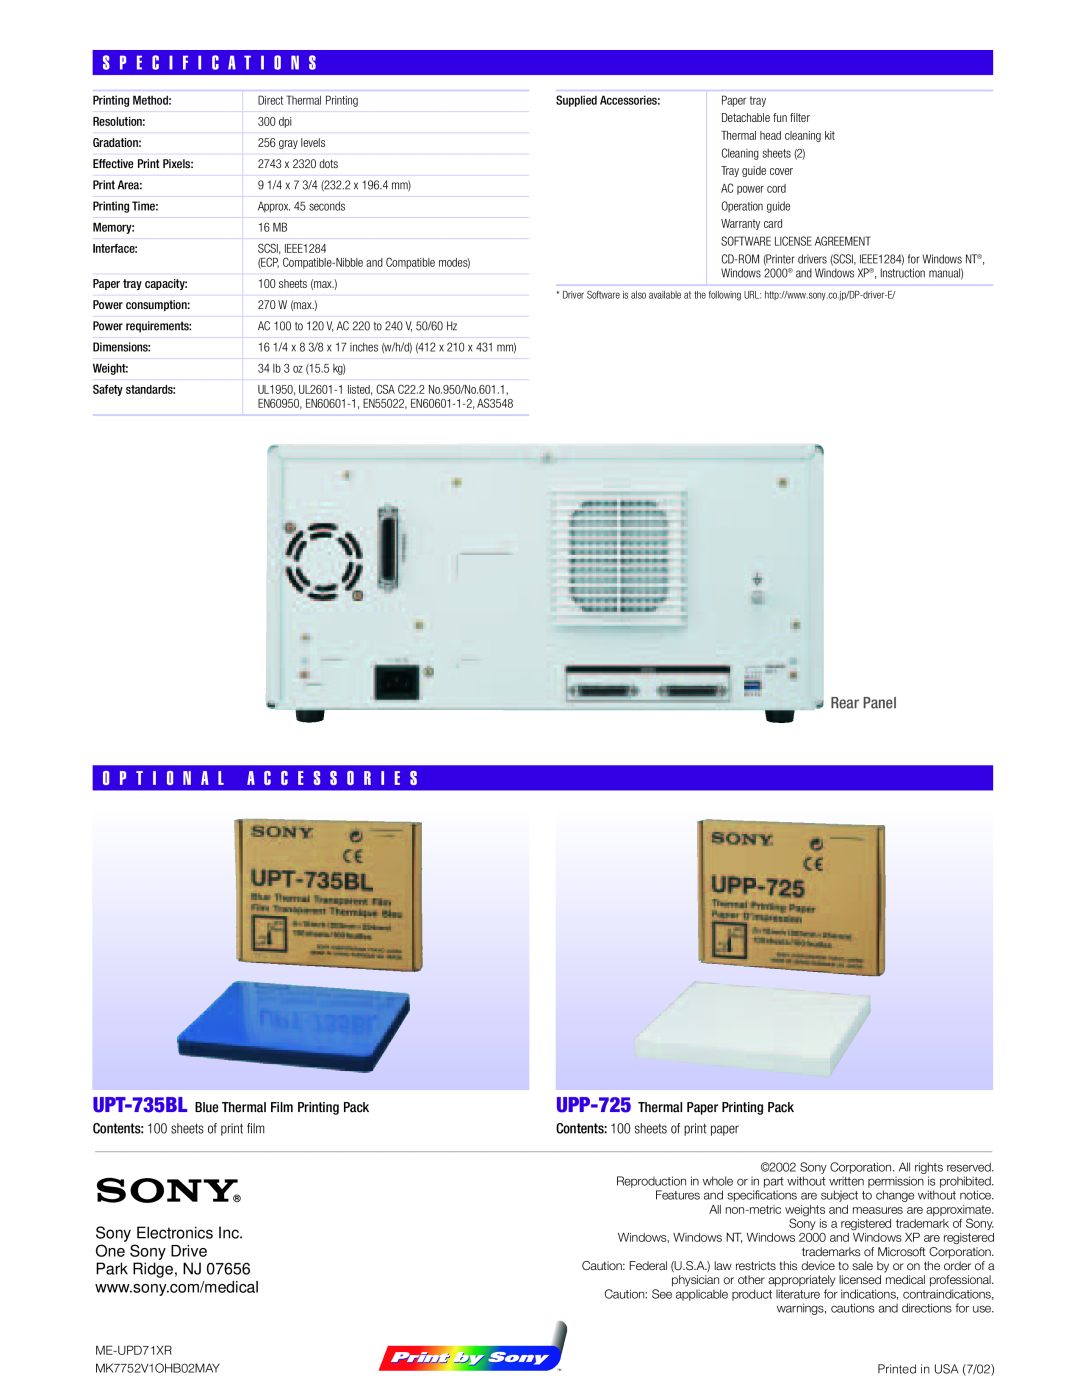 Sony UP-D71XR manual S P E C I F I C A T I O N S, O P T I O N A L A C C E S S O R I E S, Rear Panel 